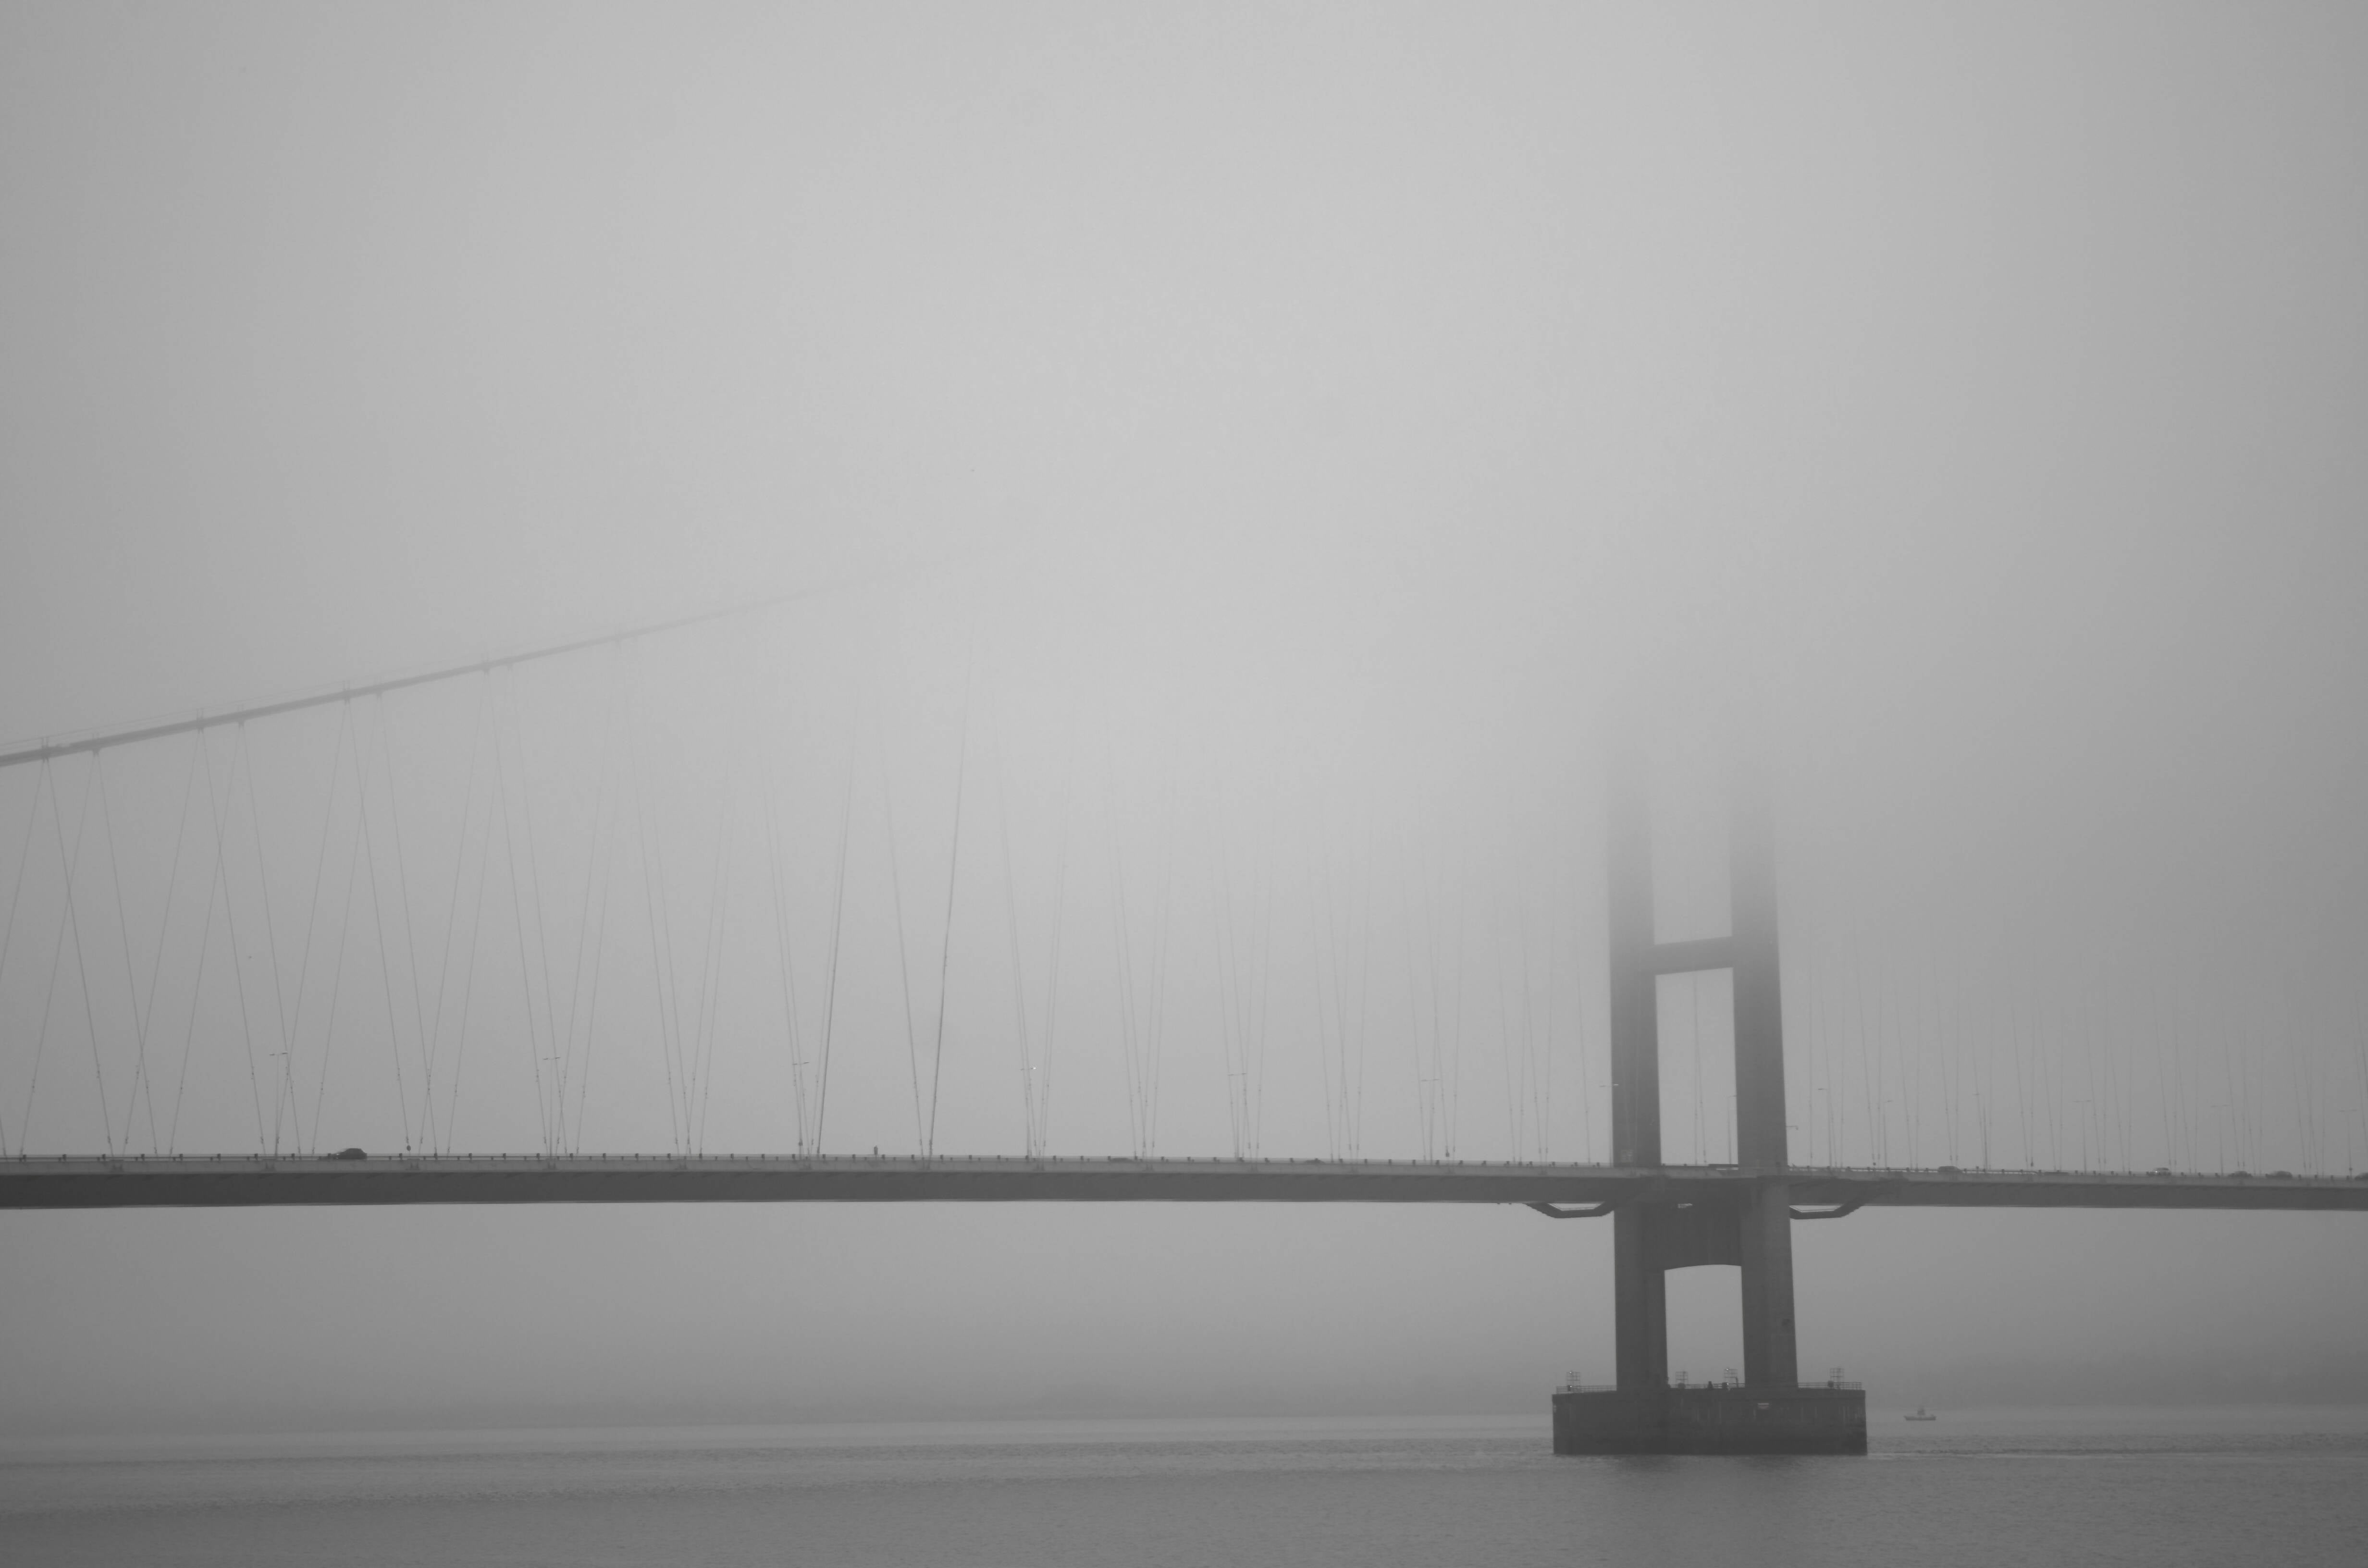 Humber Bridge fog (40x30 frame)